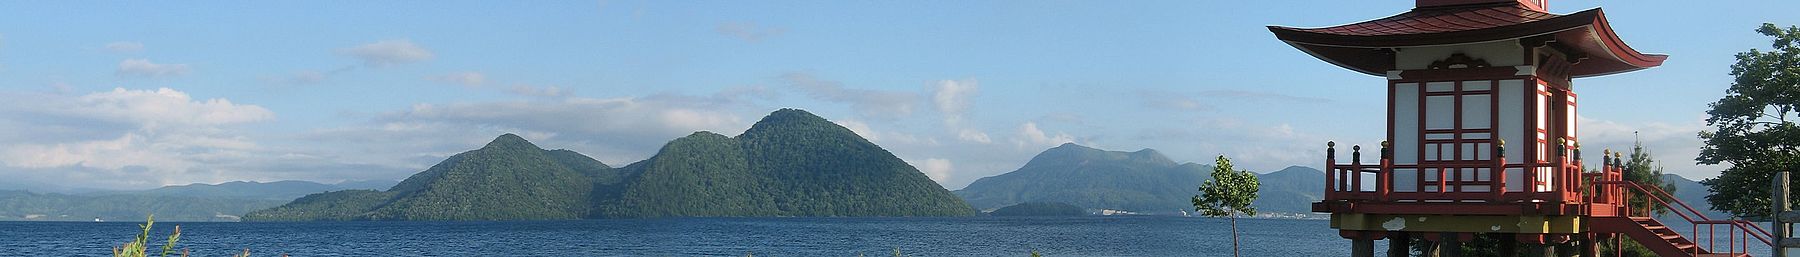 Danau Toya